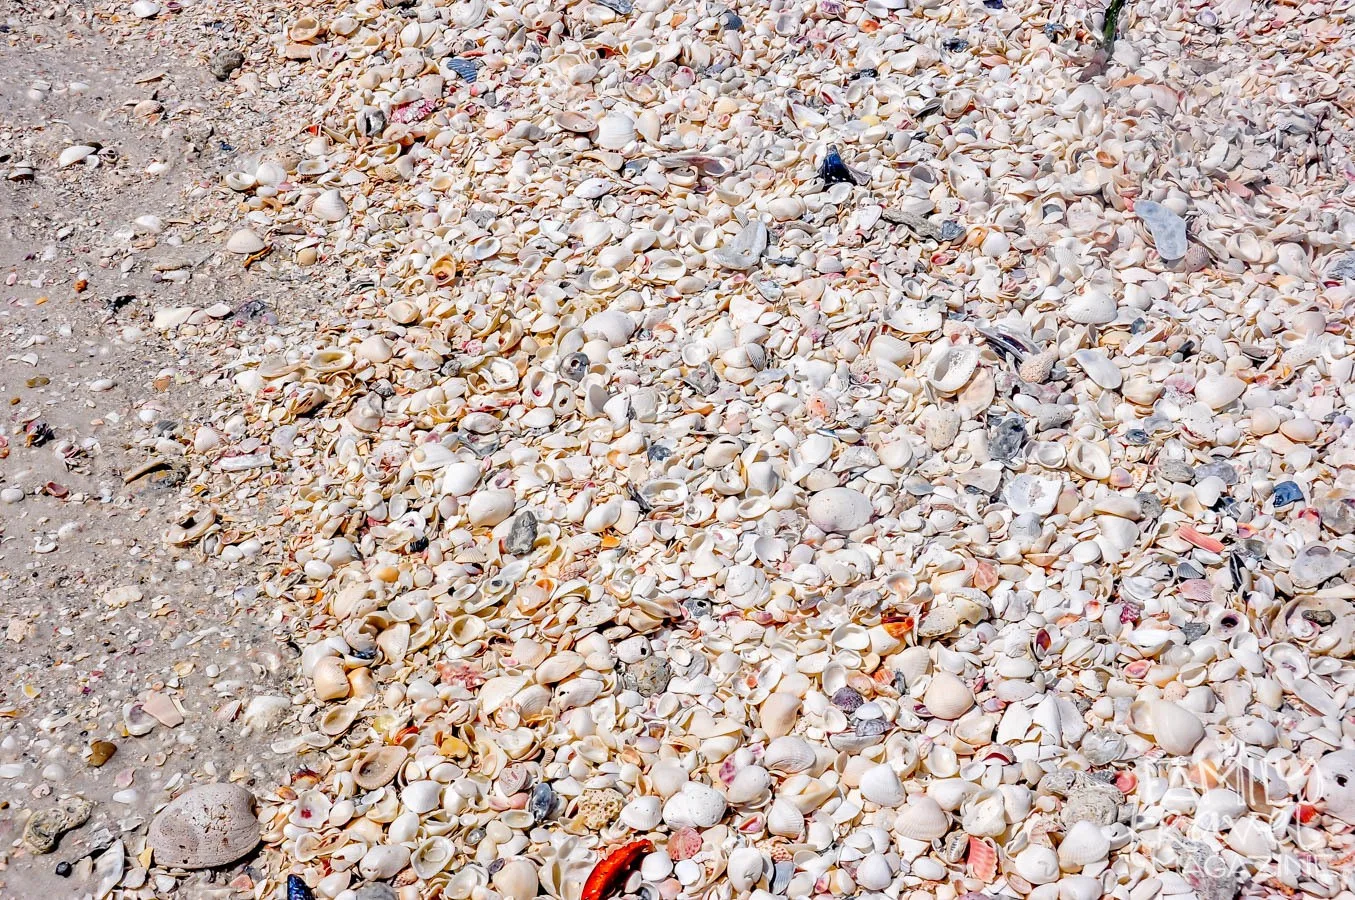 Shells on a beach in the Gulf Coast